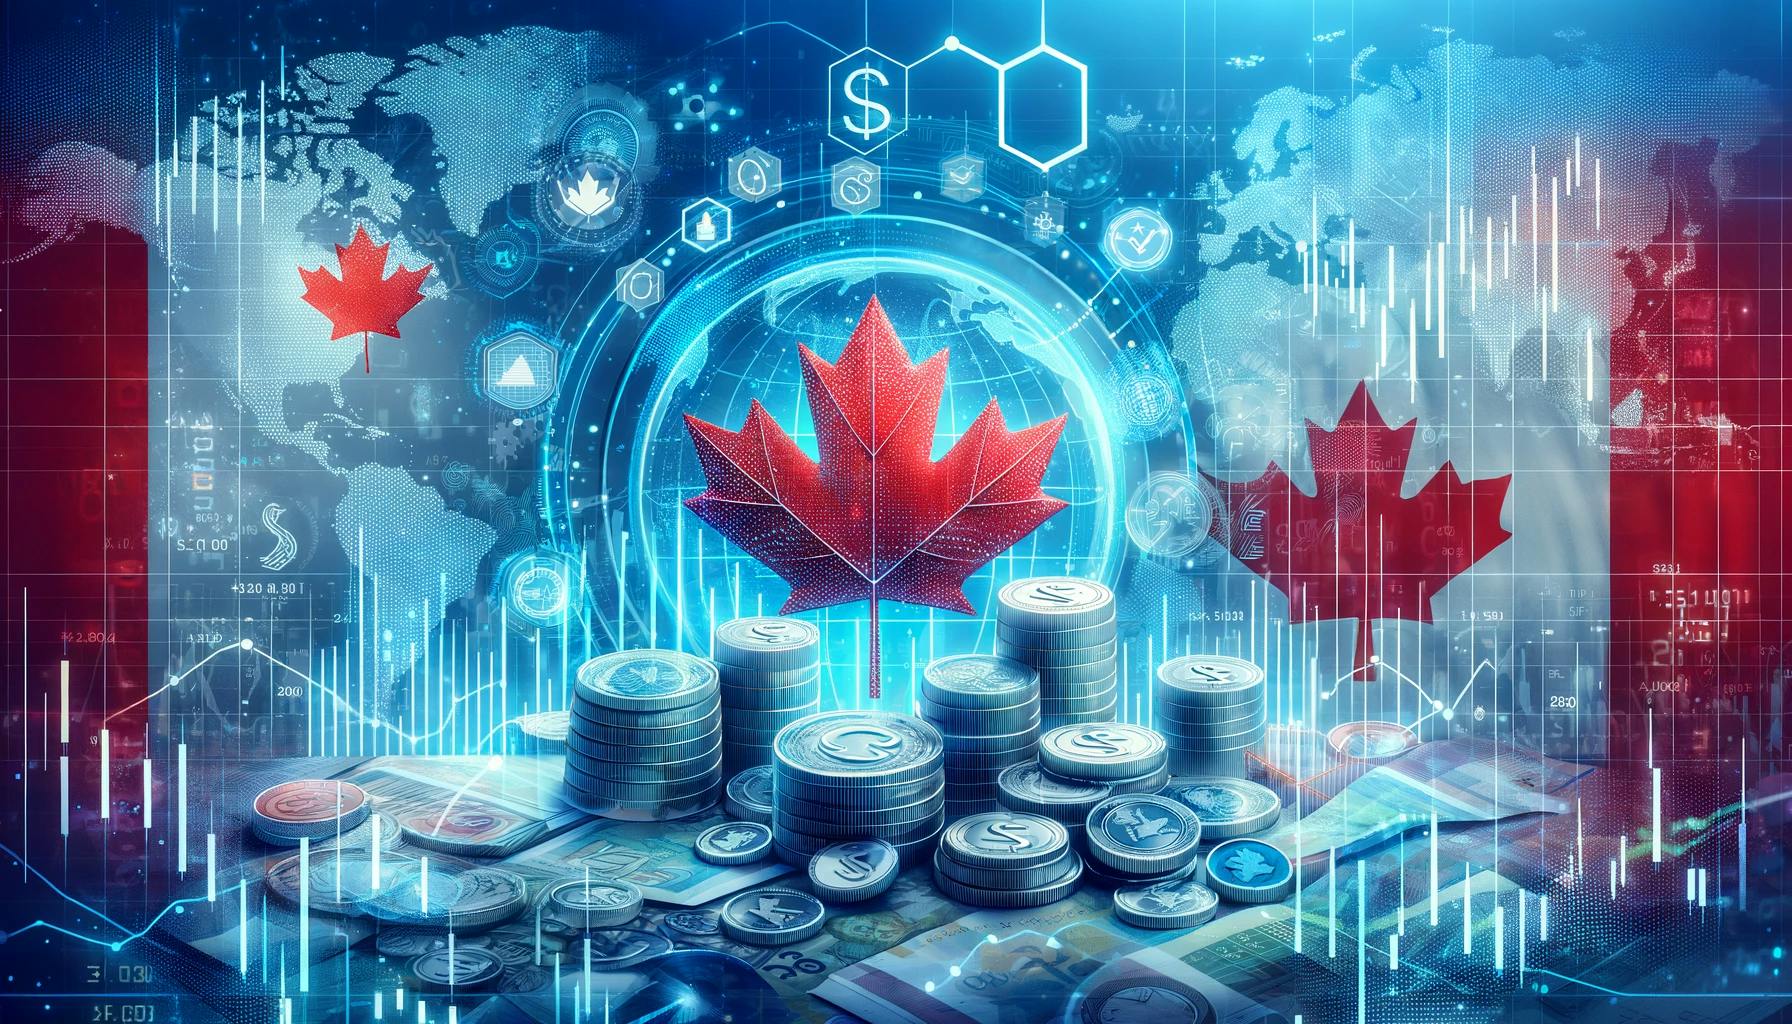 Feuille d'érable surplombant des pièces de monnaie, représentant les marchés financiers canadiens